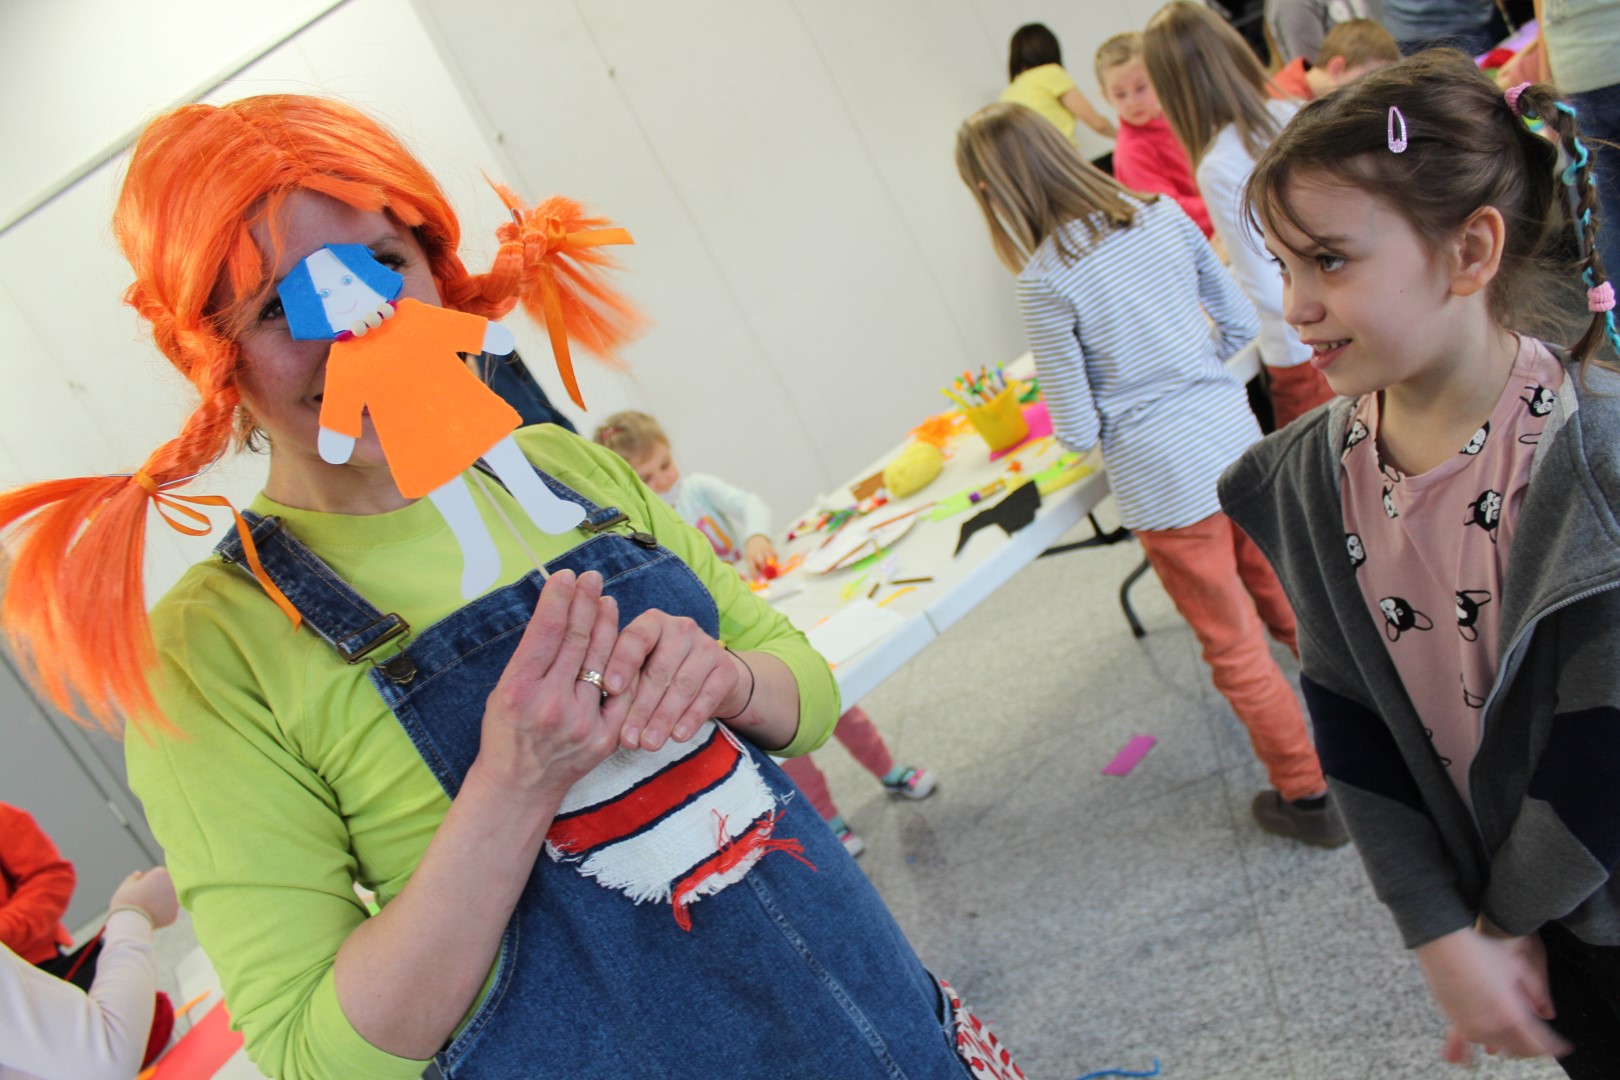 Kobieta w przebraniu Pippi Langstrumpf, ma na sobie kolorowy strój, pomarańczowe włosy, zakrywa twarz kukiełką . Obok stoi uśmiechnięta dziewczynka. W tle bawiące się dzieci.